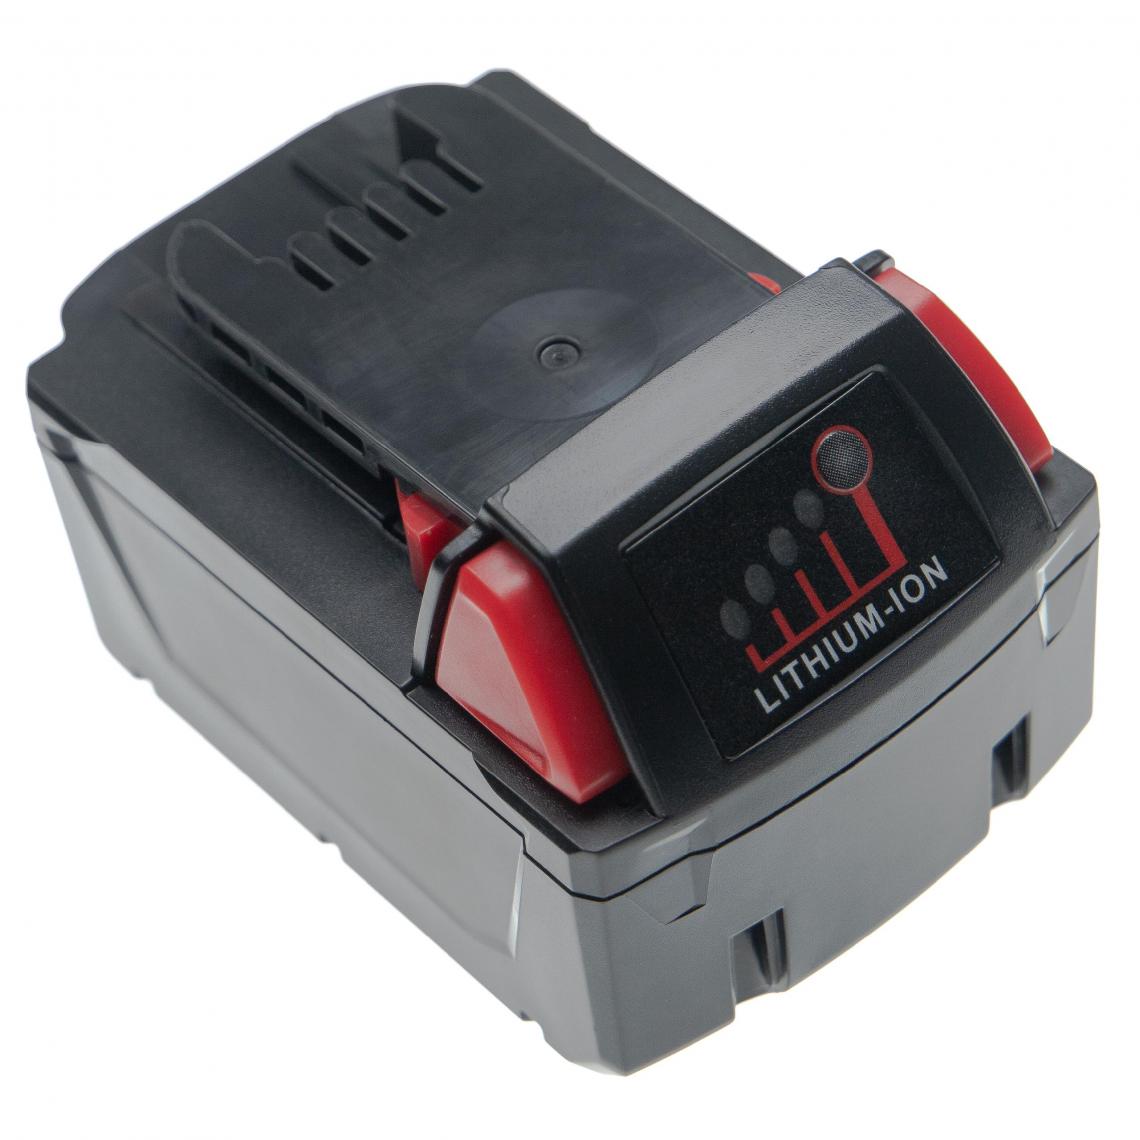 Vhbw - vhbw Batterie compatible avec Milwaukee 2753-20, 2754-20, 2755-20, 2755B-20, 2757-20, 2758-20, 2759-20 outil électrique (4000mAh Li-ion 18V) - Accessoires vissage, perçage